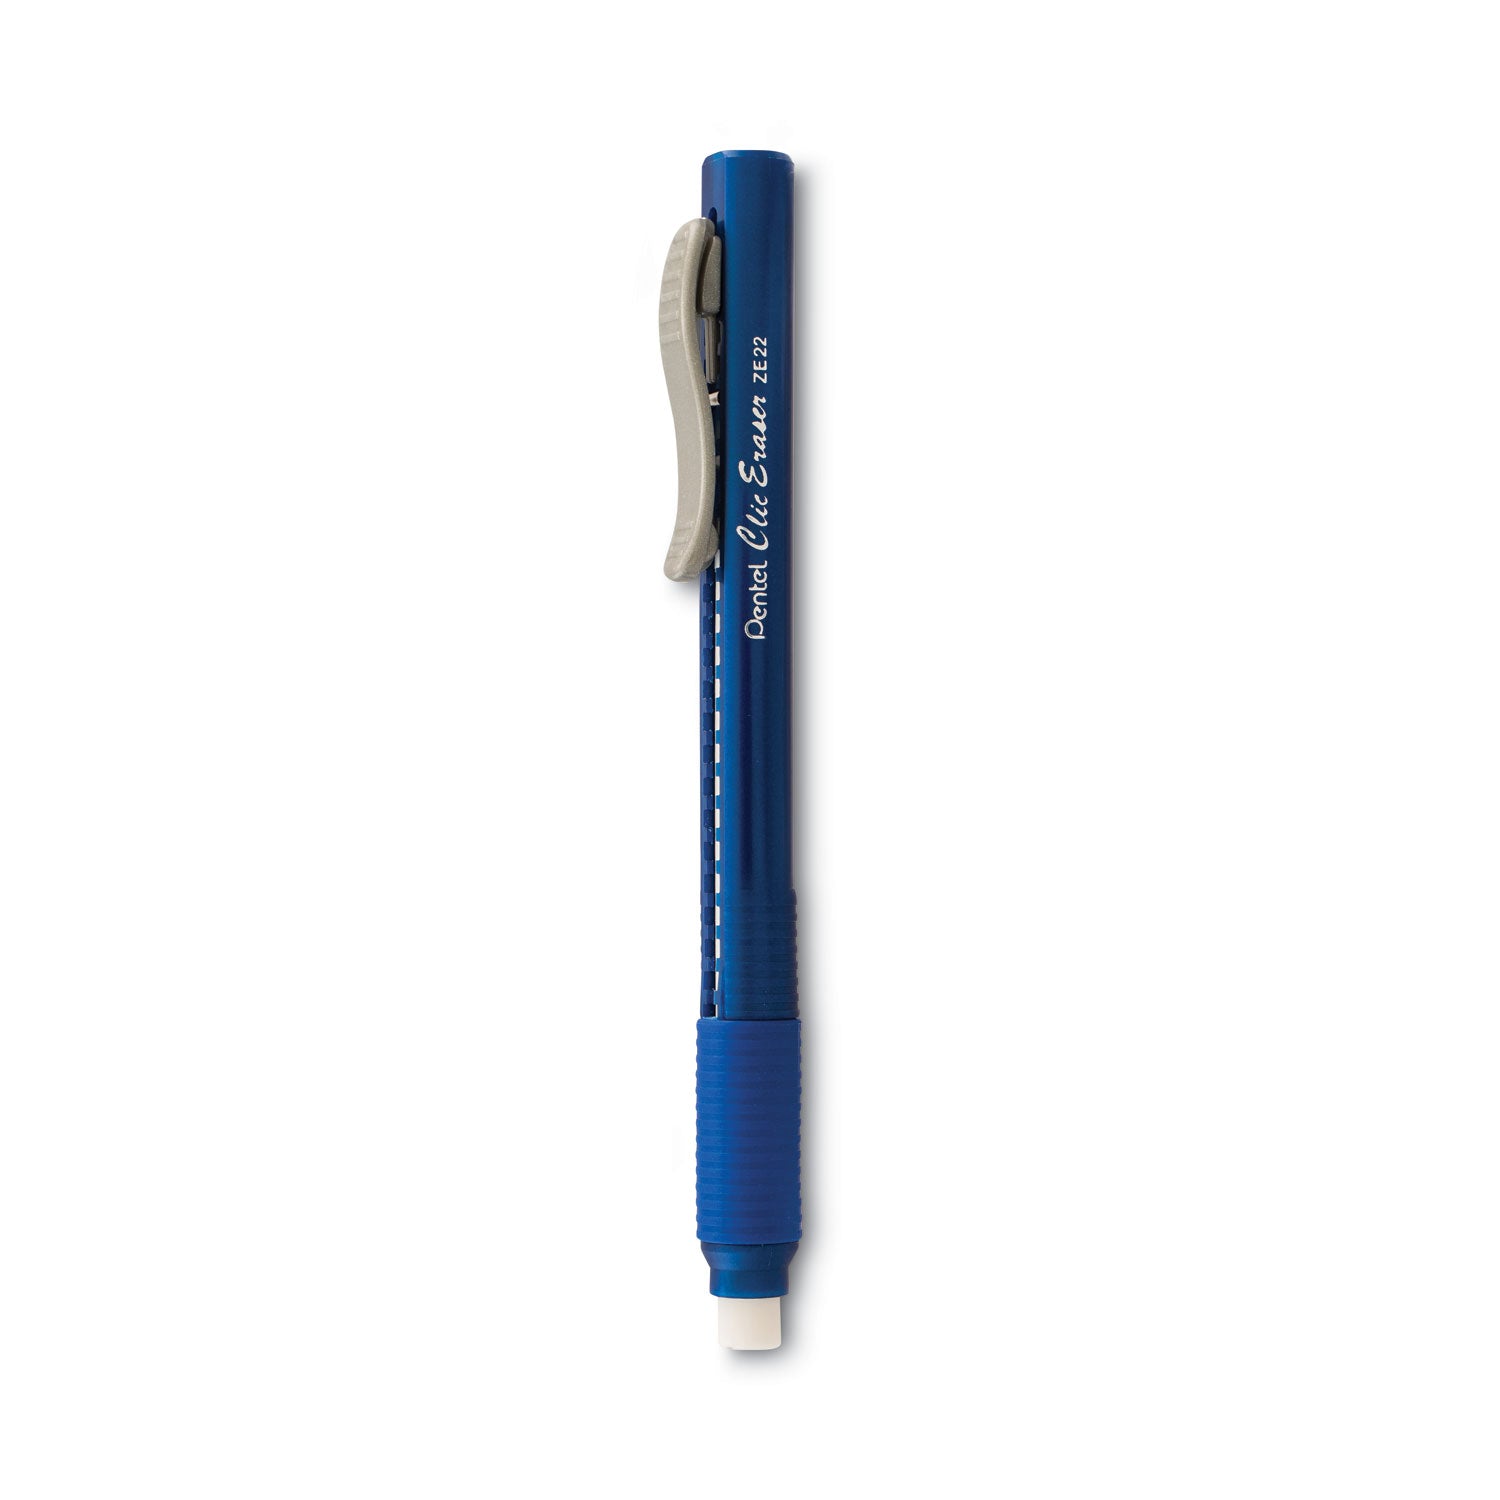 Clic Eraser Grip Eraser, For Pencil Marks, White Eraser, Blue Barrel - 